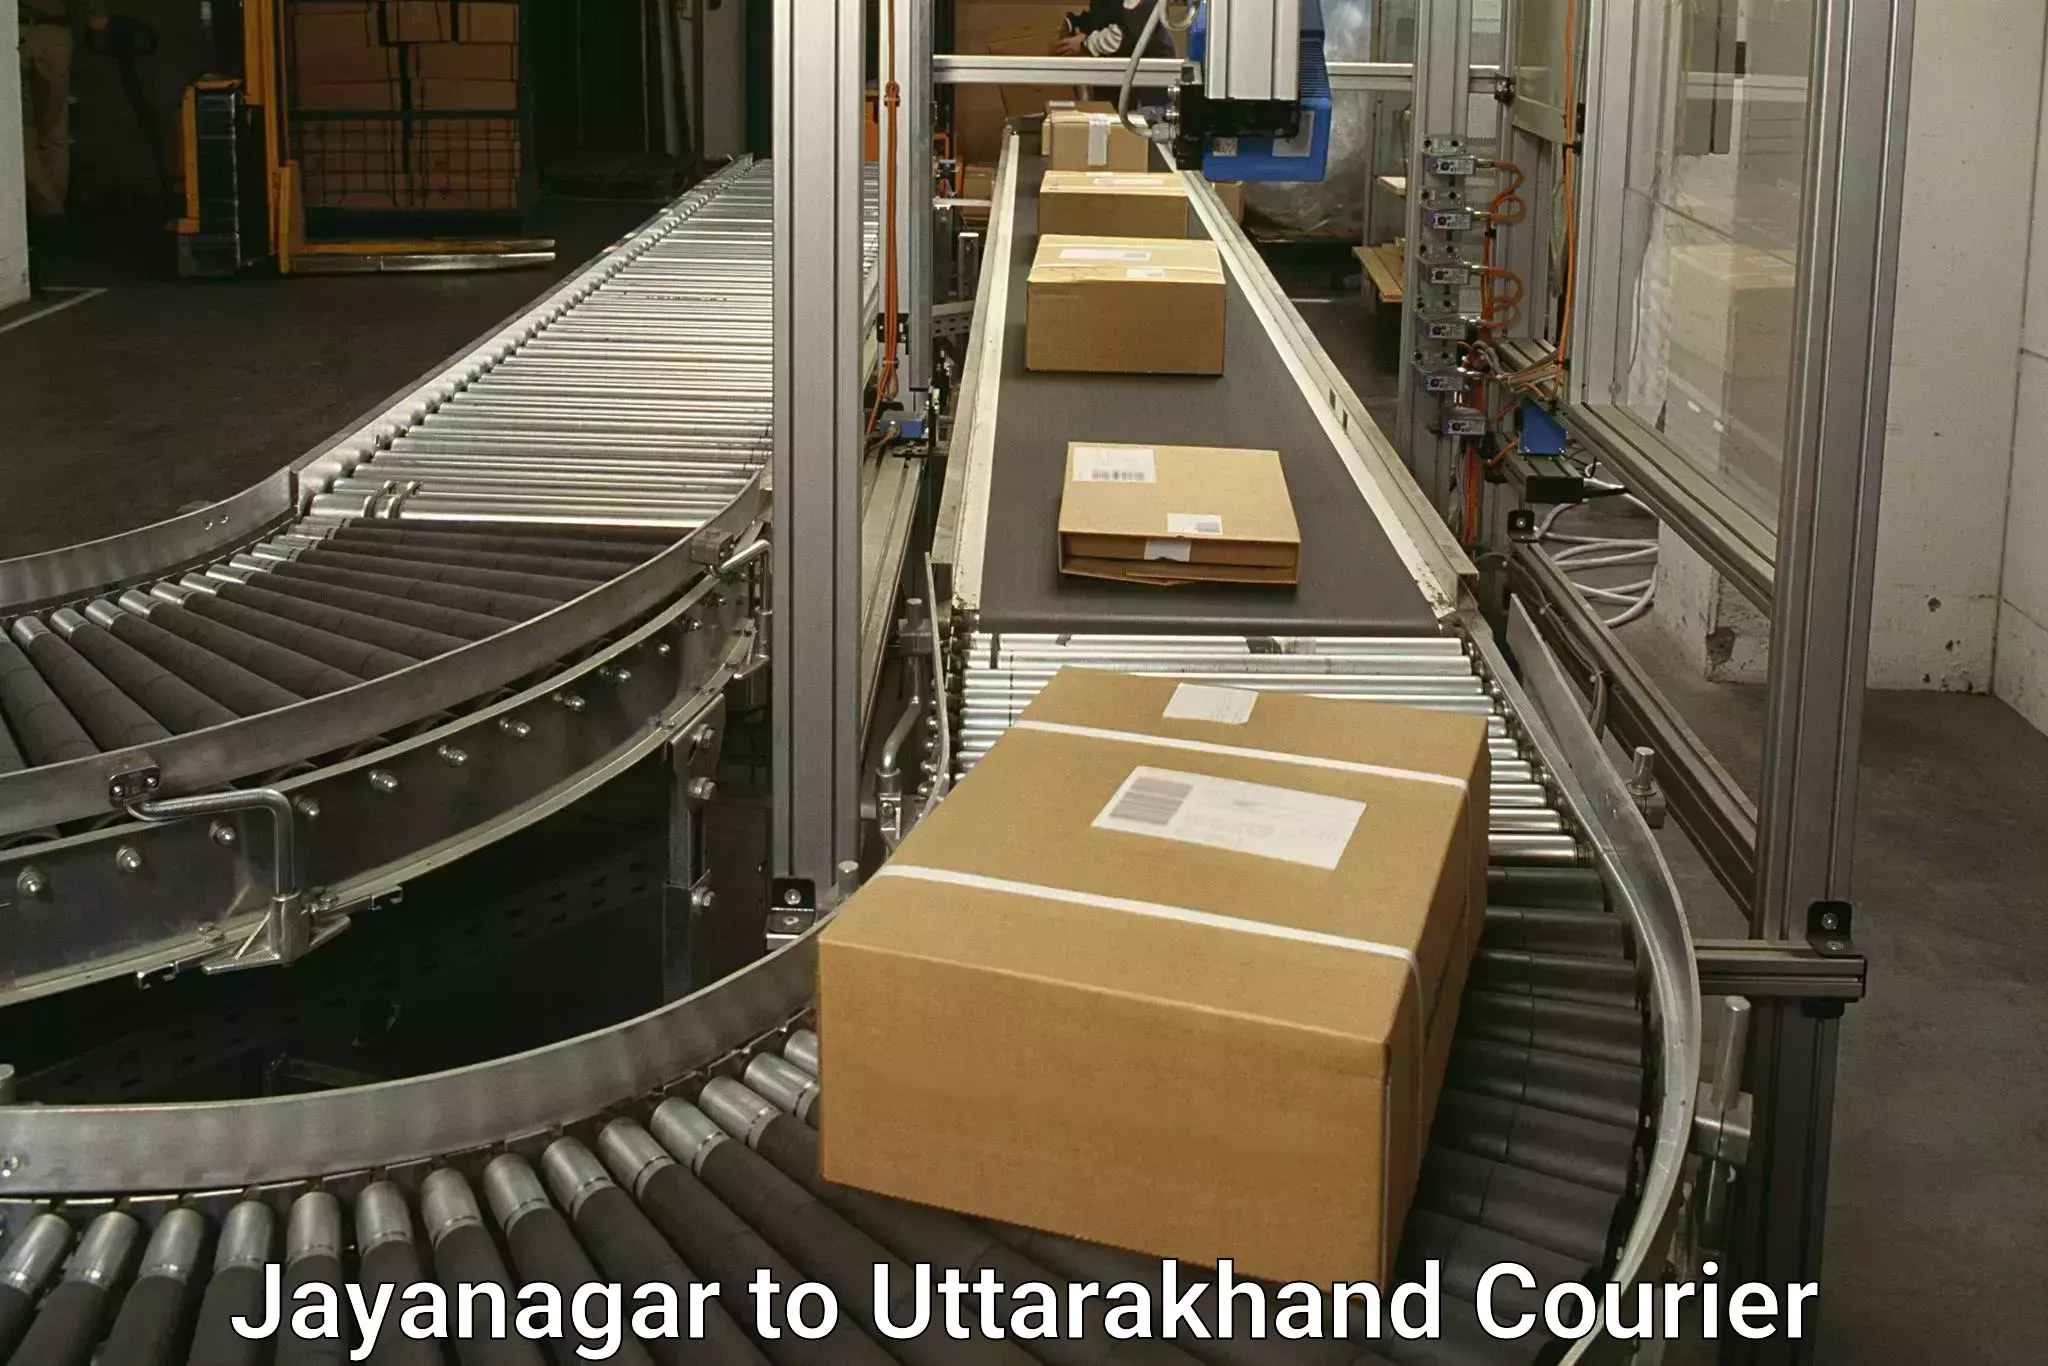 Urgent courier needs in Jayanagar to Uttarakhand